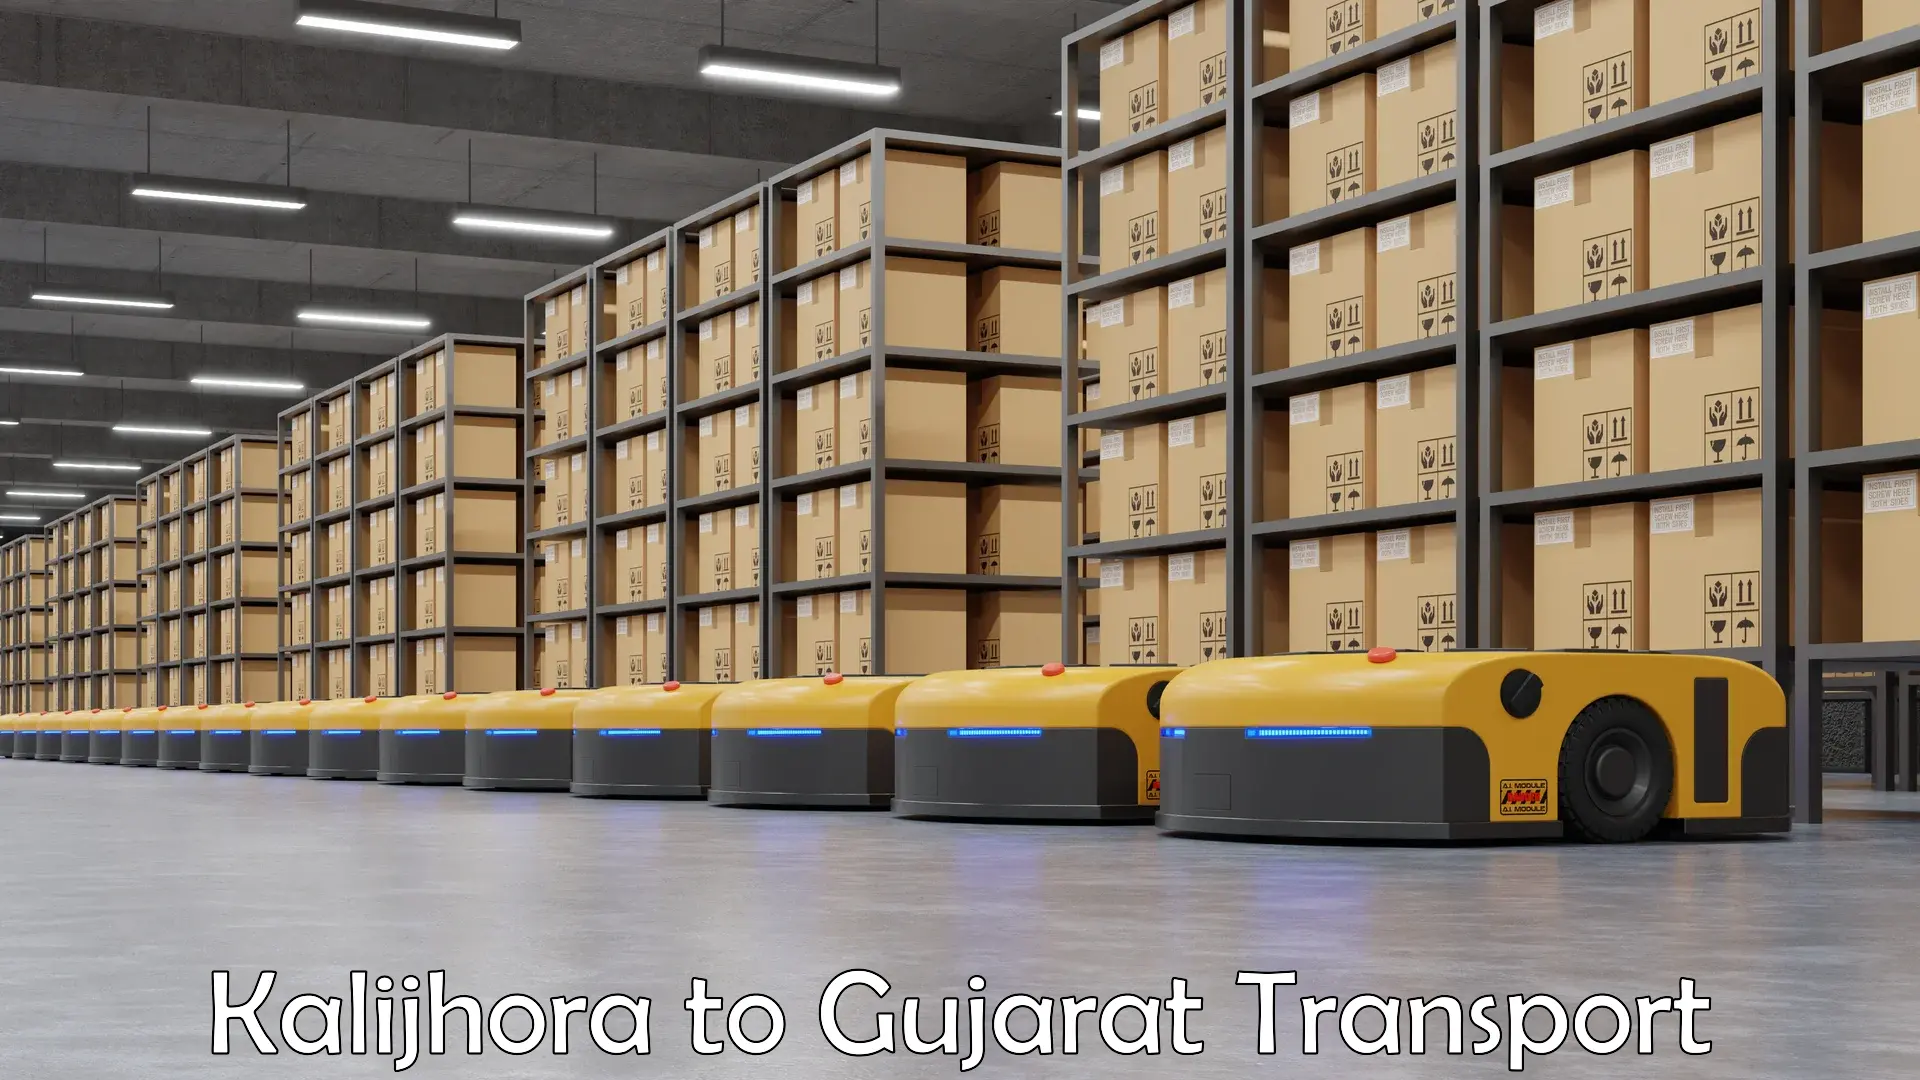 Furniture transport service Kalijhora to Dayapar